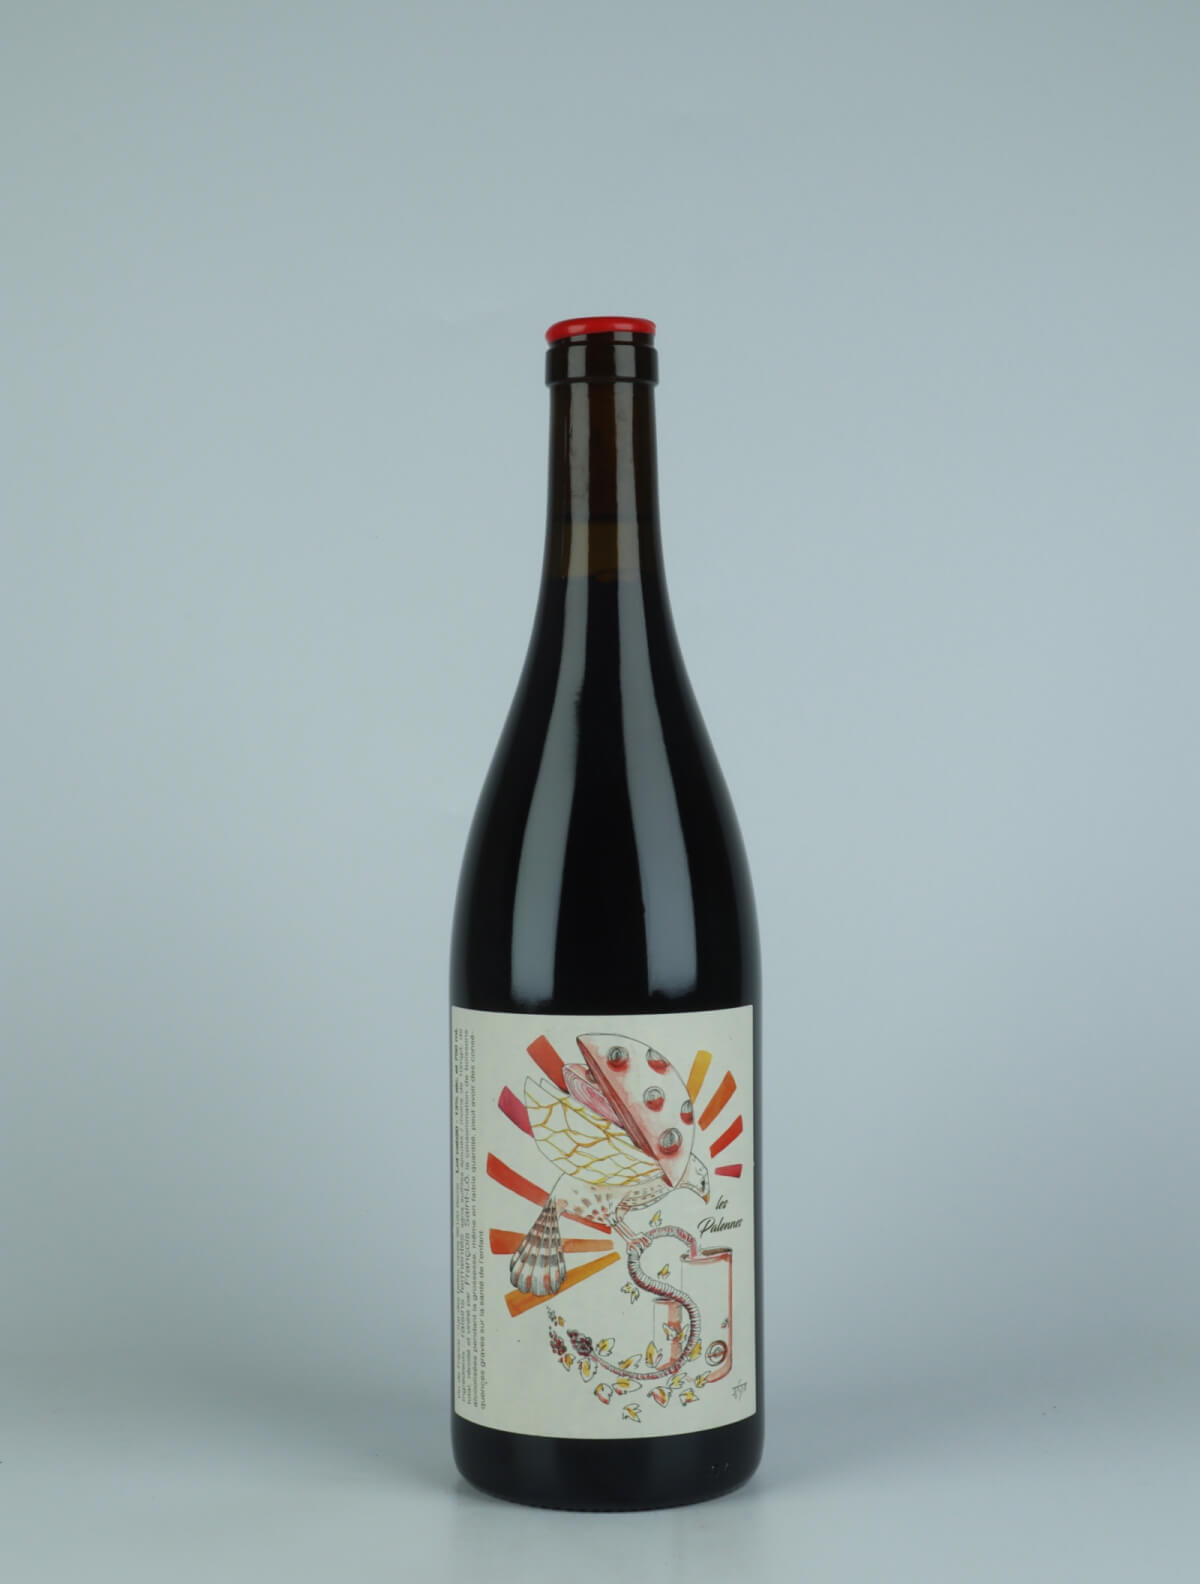 A bottle 2020 Les Palennes Red wine from François Saint-Lô, Loire in France